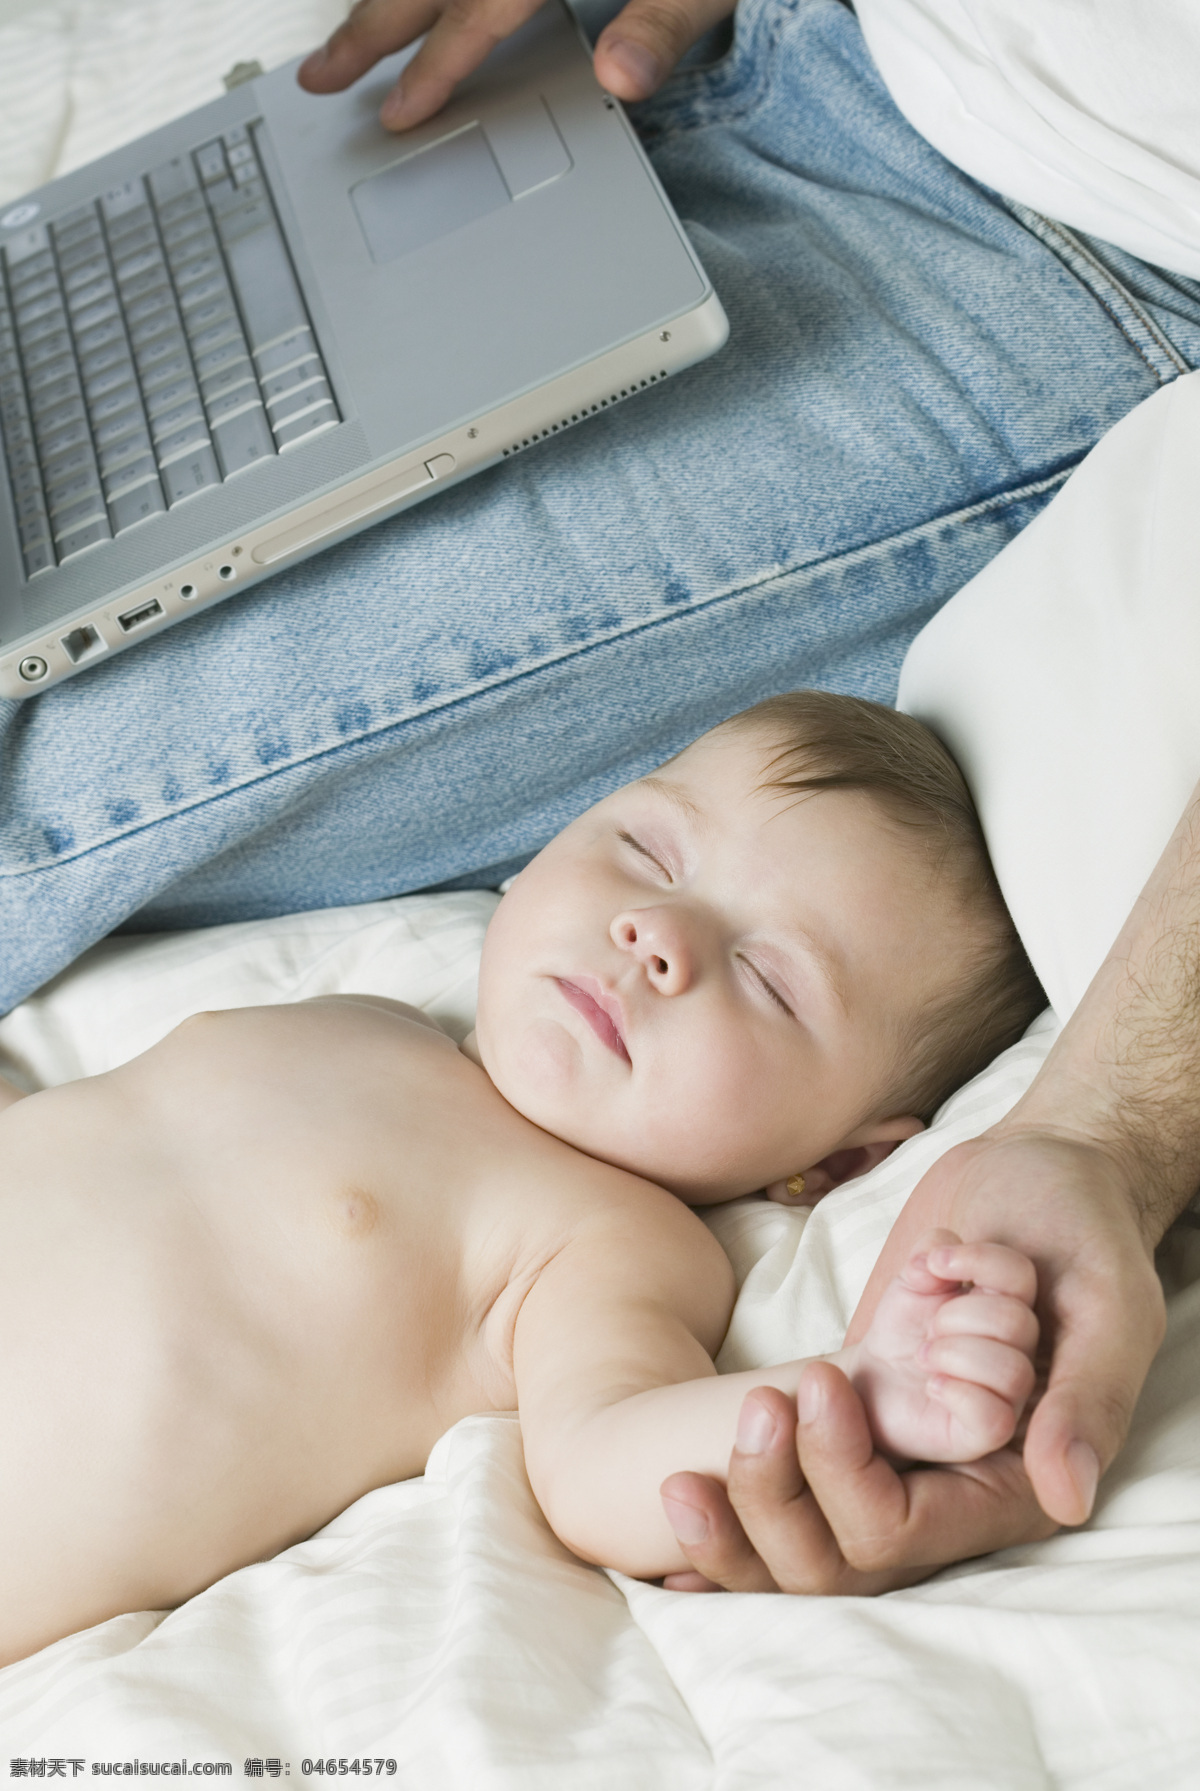 握 父亲 手 睡觉 小 婴儿 可爱 熟睡 沉睡 手握手 父爱 天真可爱 儿童图片 人物图片